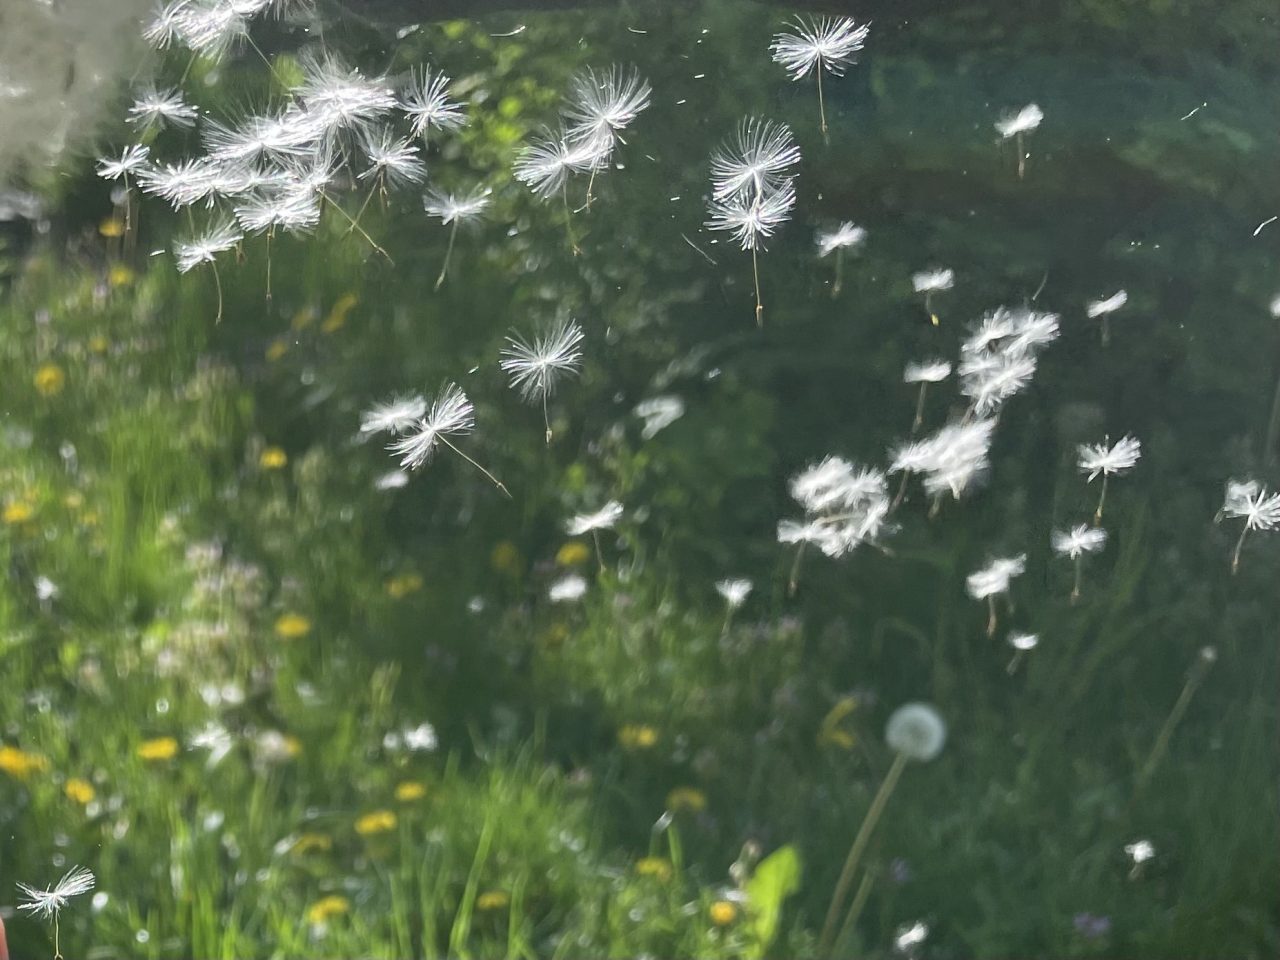 fliegende Pusteblumenschirmchen, die über eine grüne Wiese fliegen